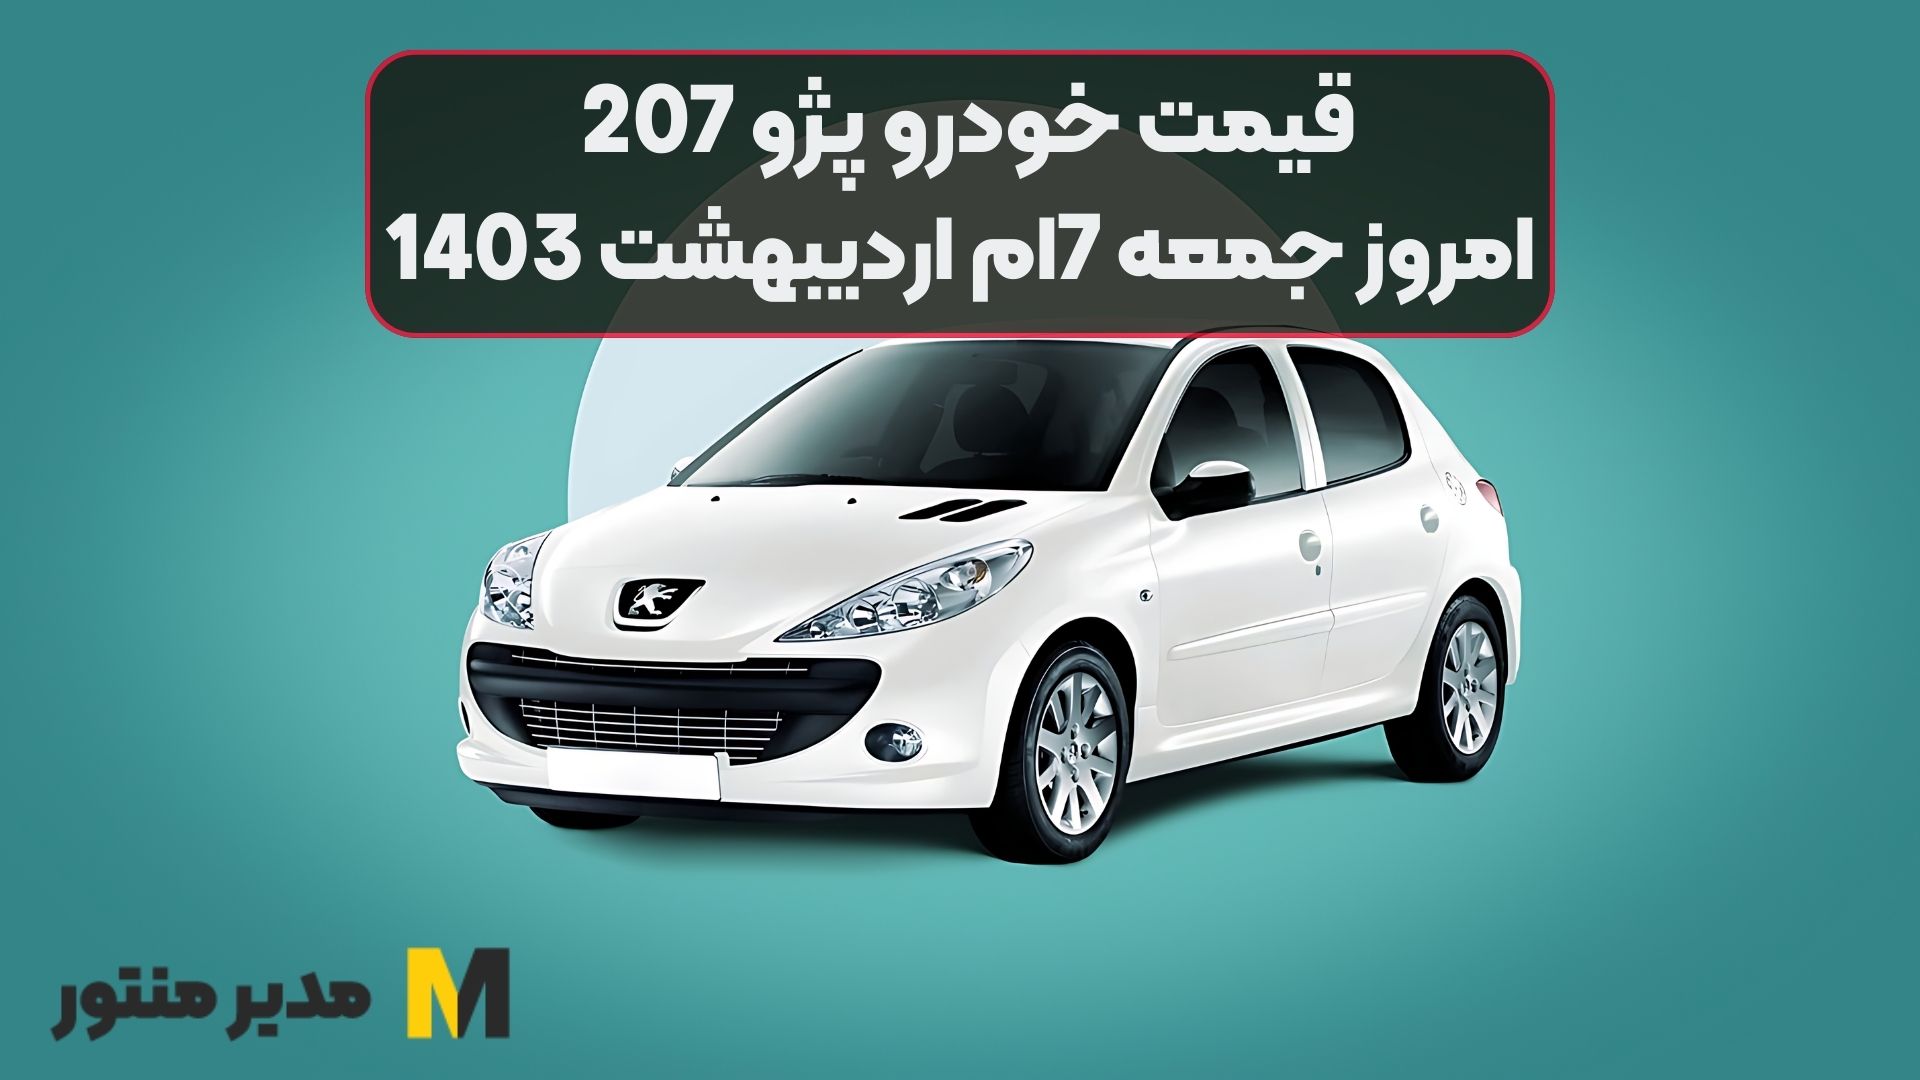 قیمت خودرو پژو 207 امروز جمعه 7ام اردیبهشت 1403